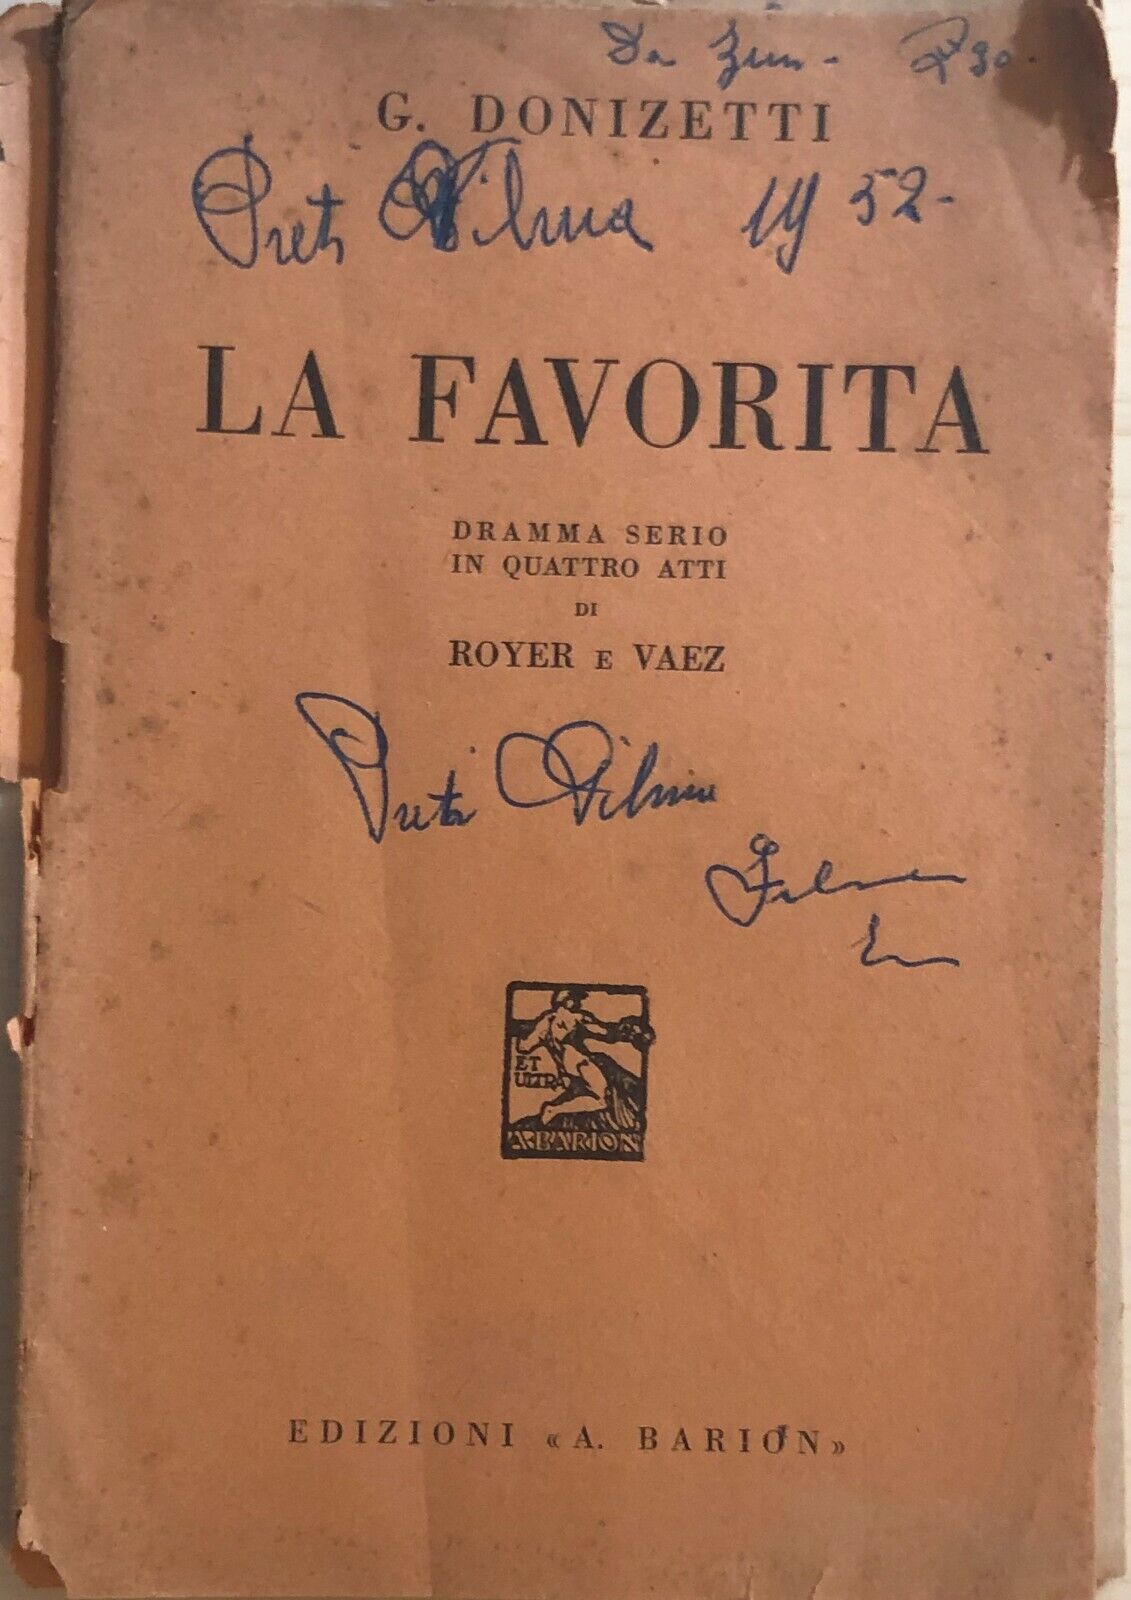 La favorita di G. Donizetti, 1942, Edizioni Barion